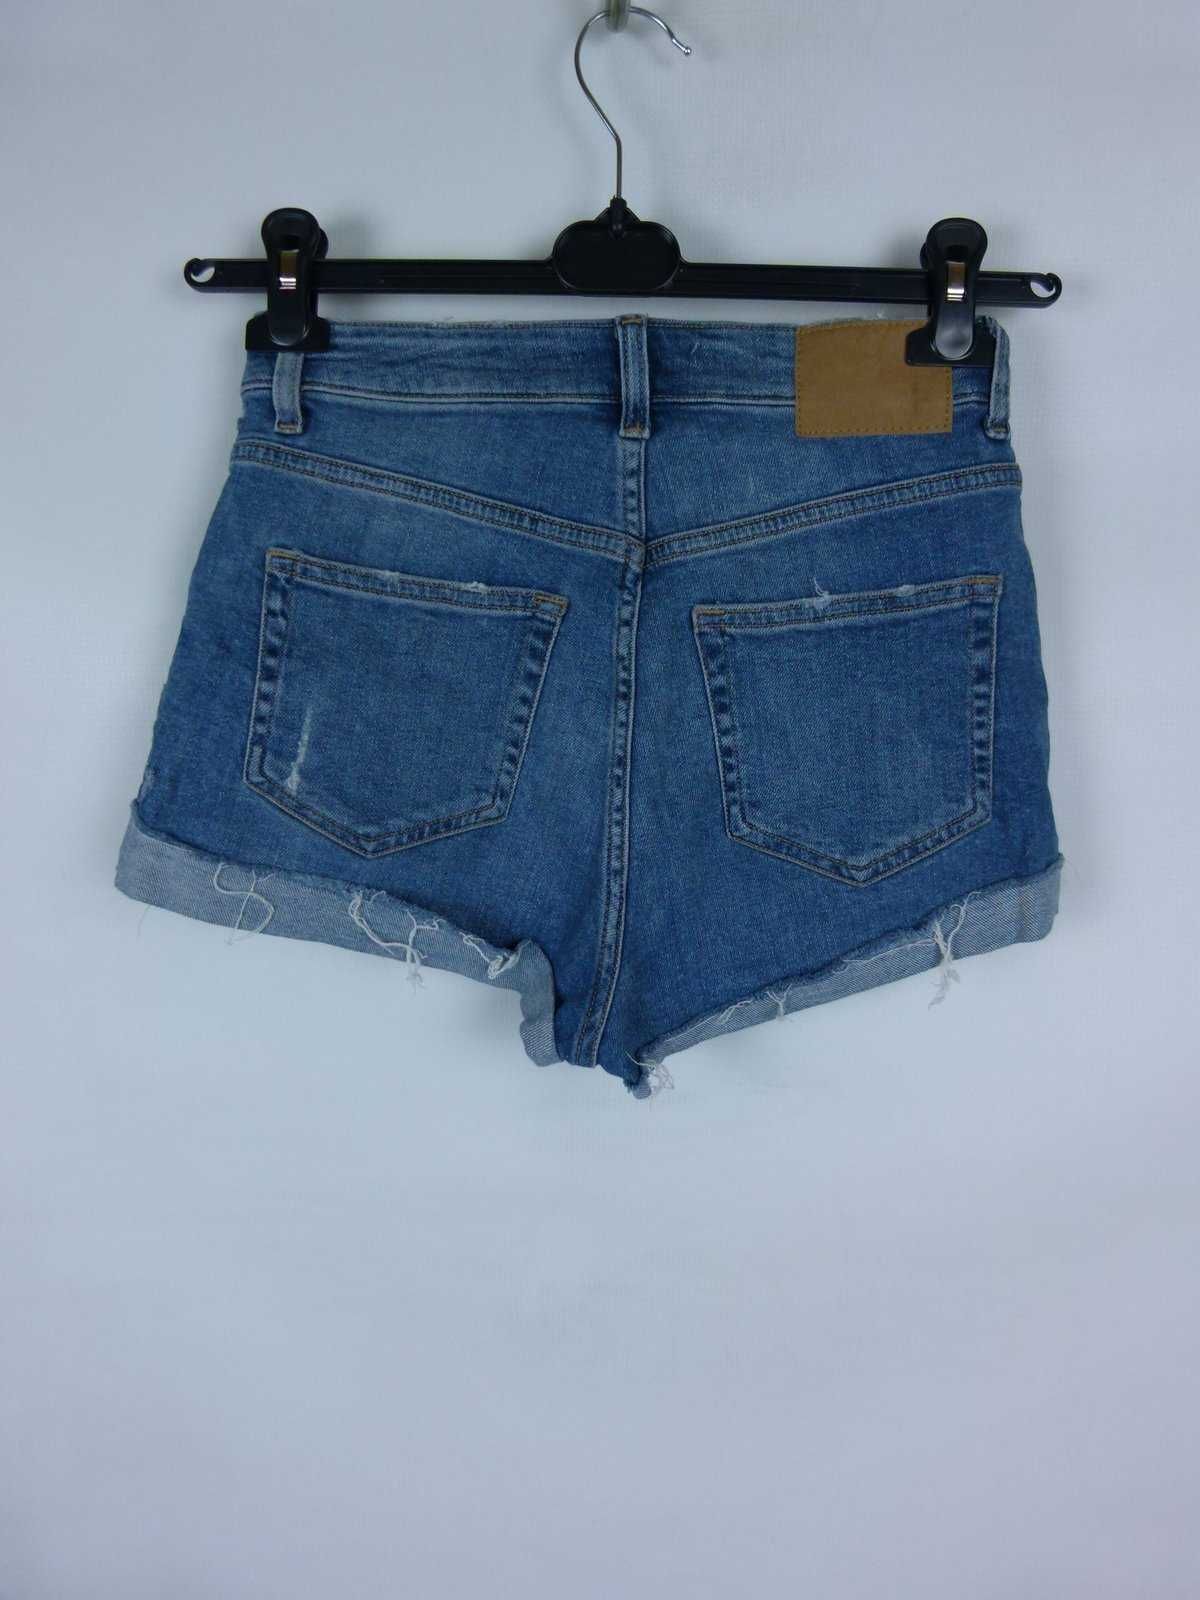 H&M spodenki szorty jeans dziury 8 / 36